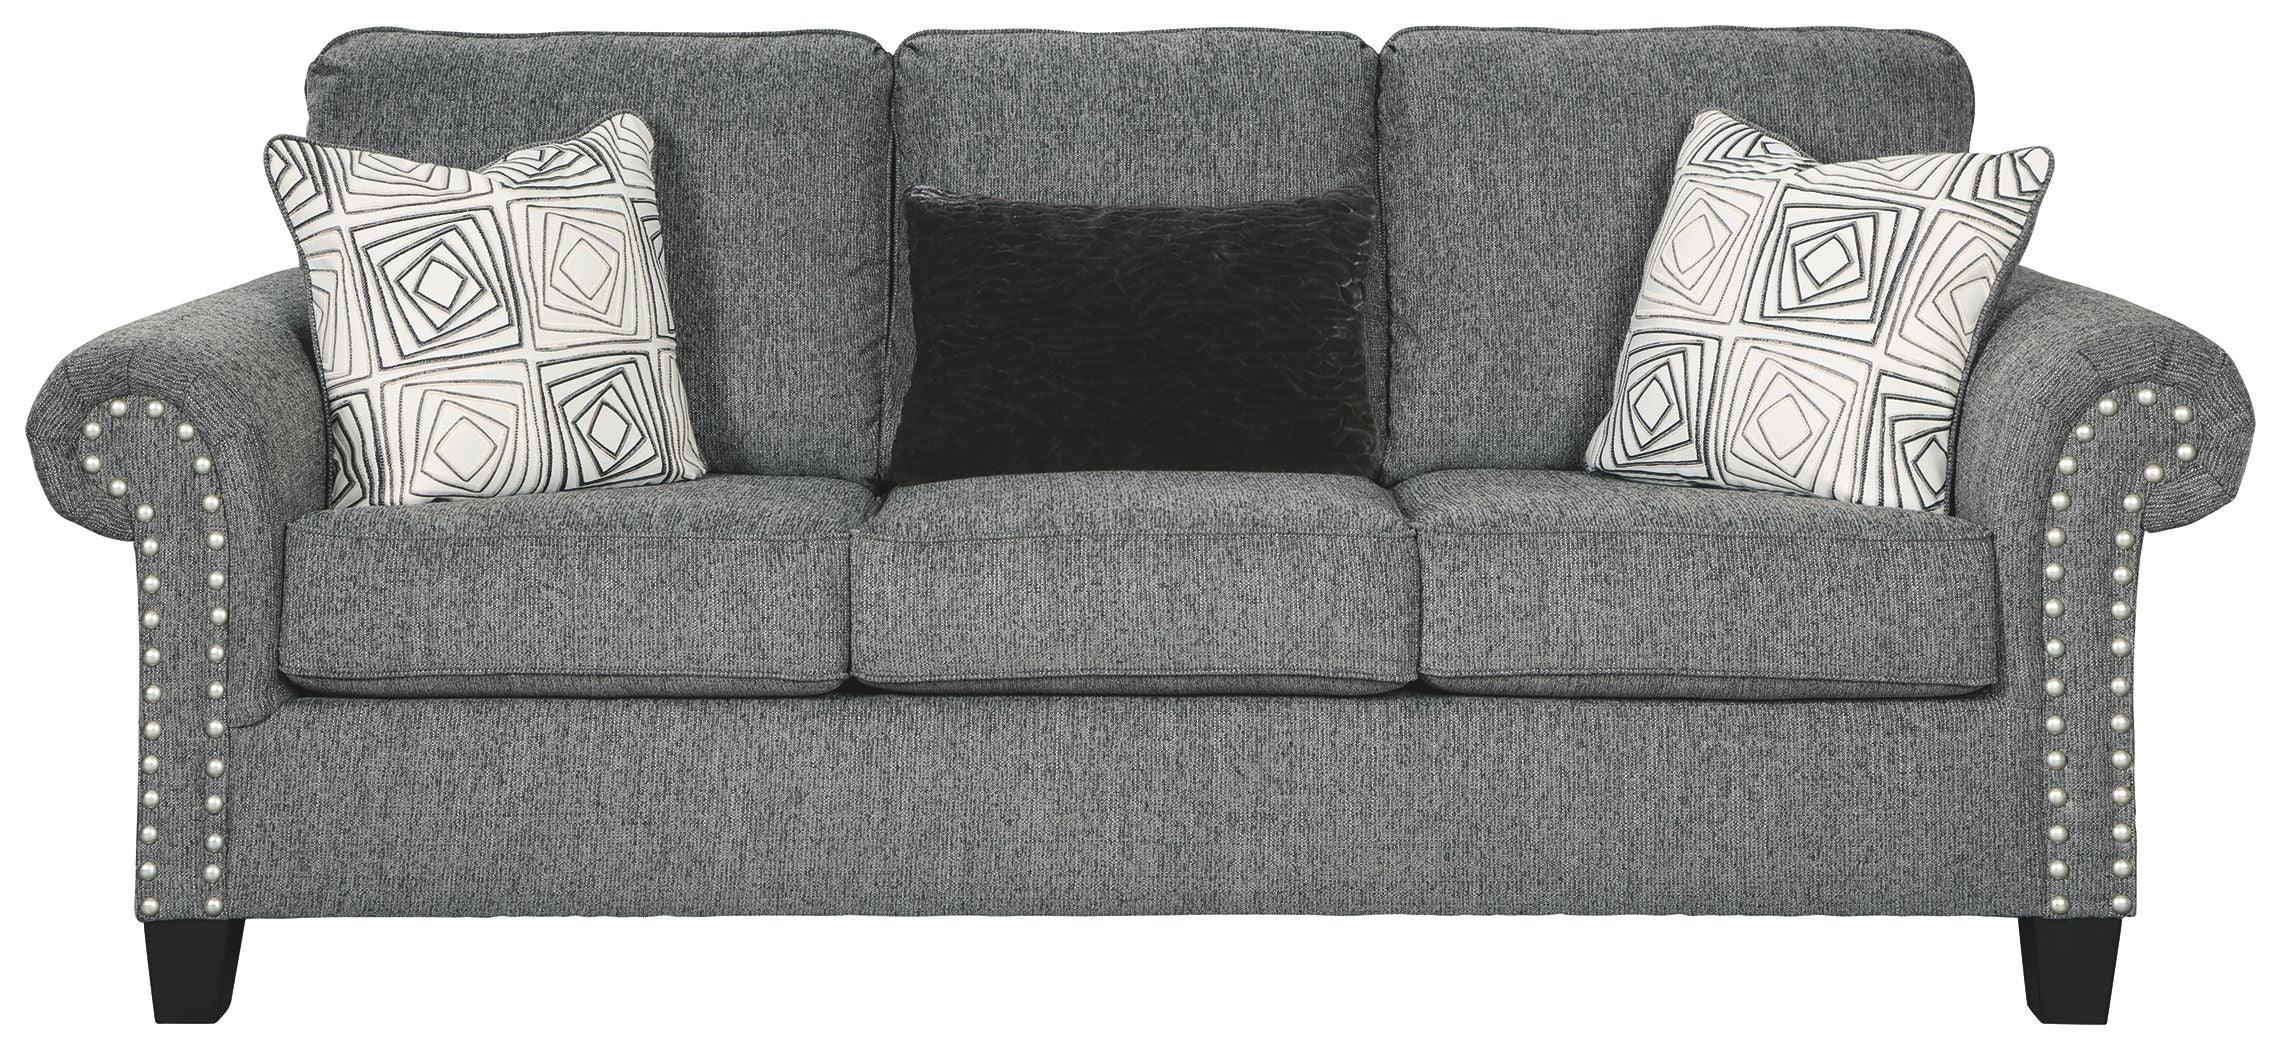 Ashley Furniture - Agleno - Charcoal - Sofa - 5th Avenue Furniture